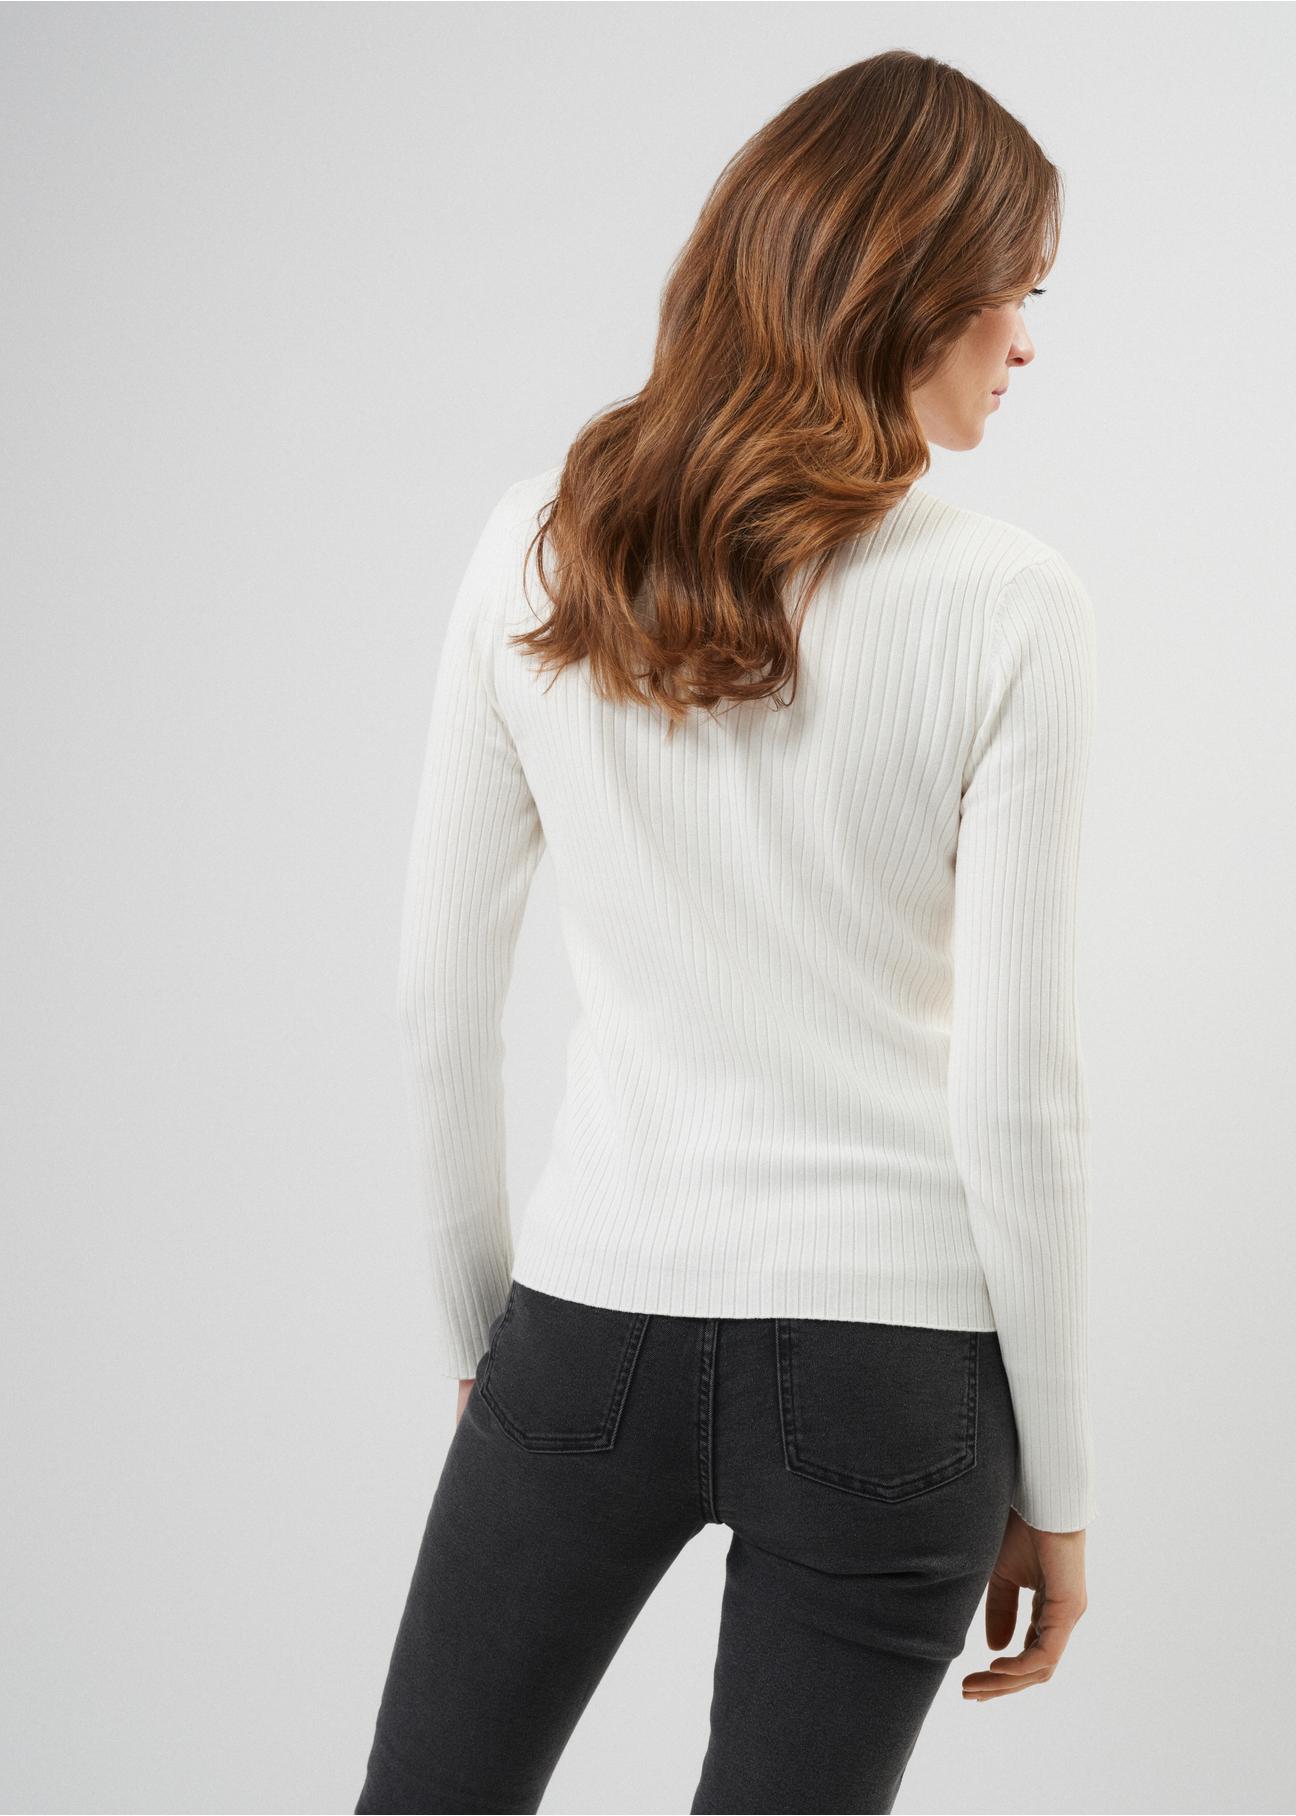 Kremowy sweter damski z golfem SWEDT-0184-12(Z23)